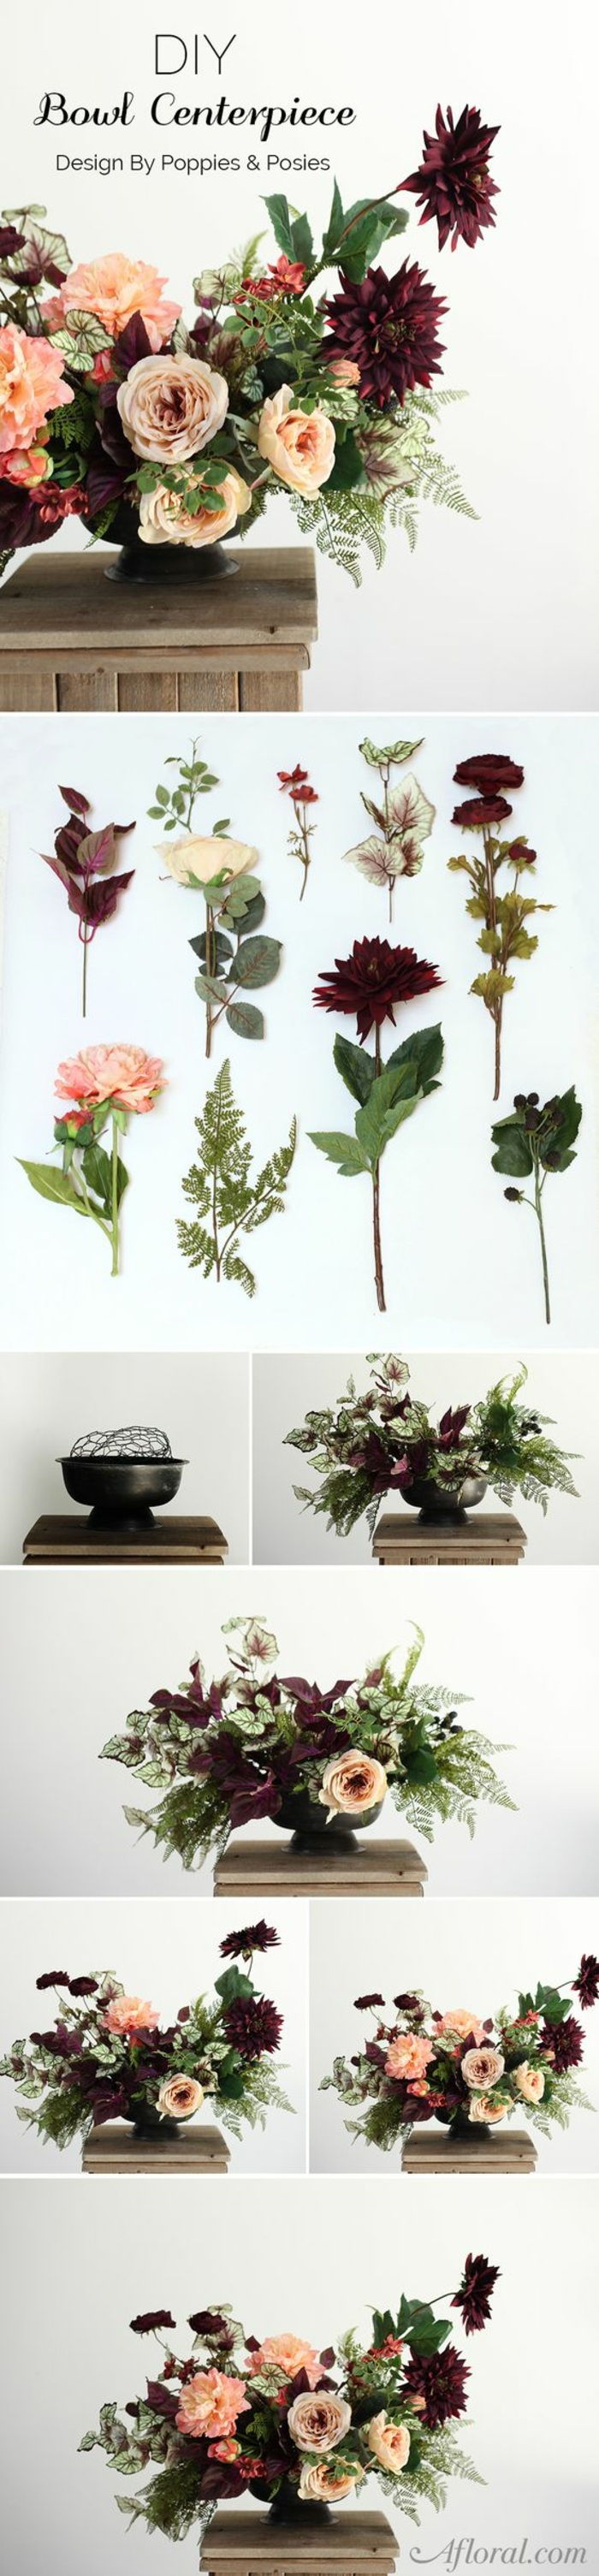 praznična dekoracija namizij, urejanje cvetja, gobice, vaze, okrasne mize